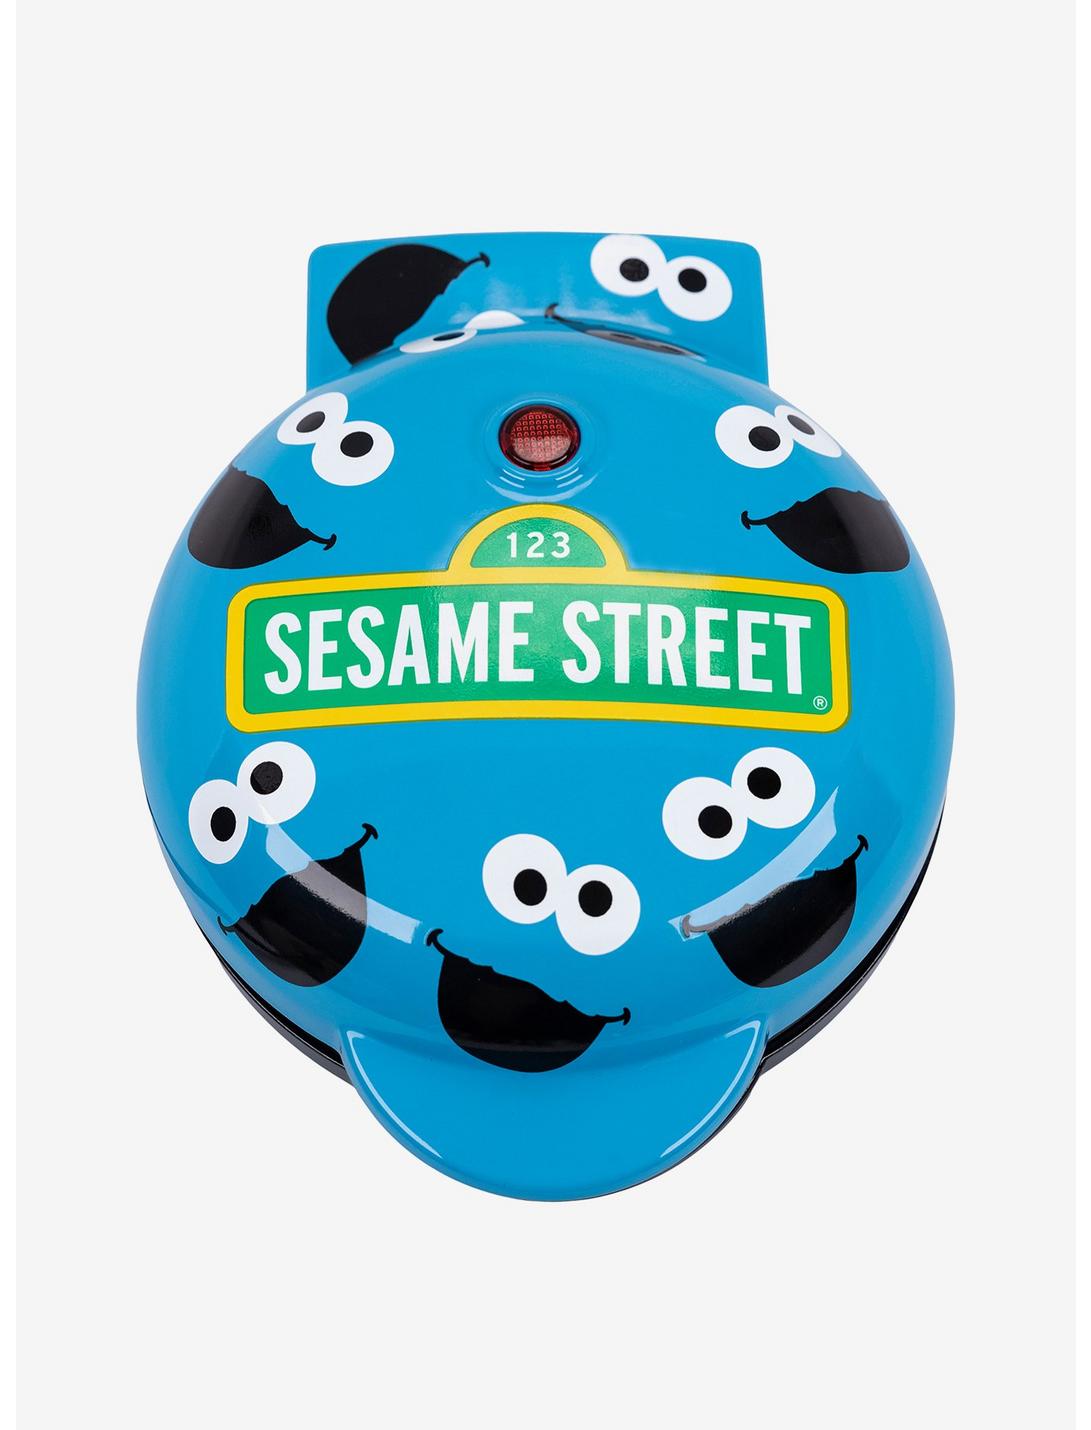 Uncanny Brands Sesame Street Cookie Monster Mini Waffle Maker, , hi-res